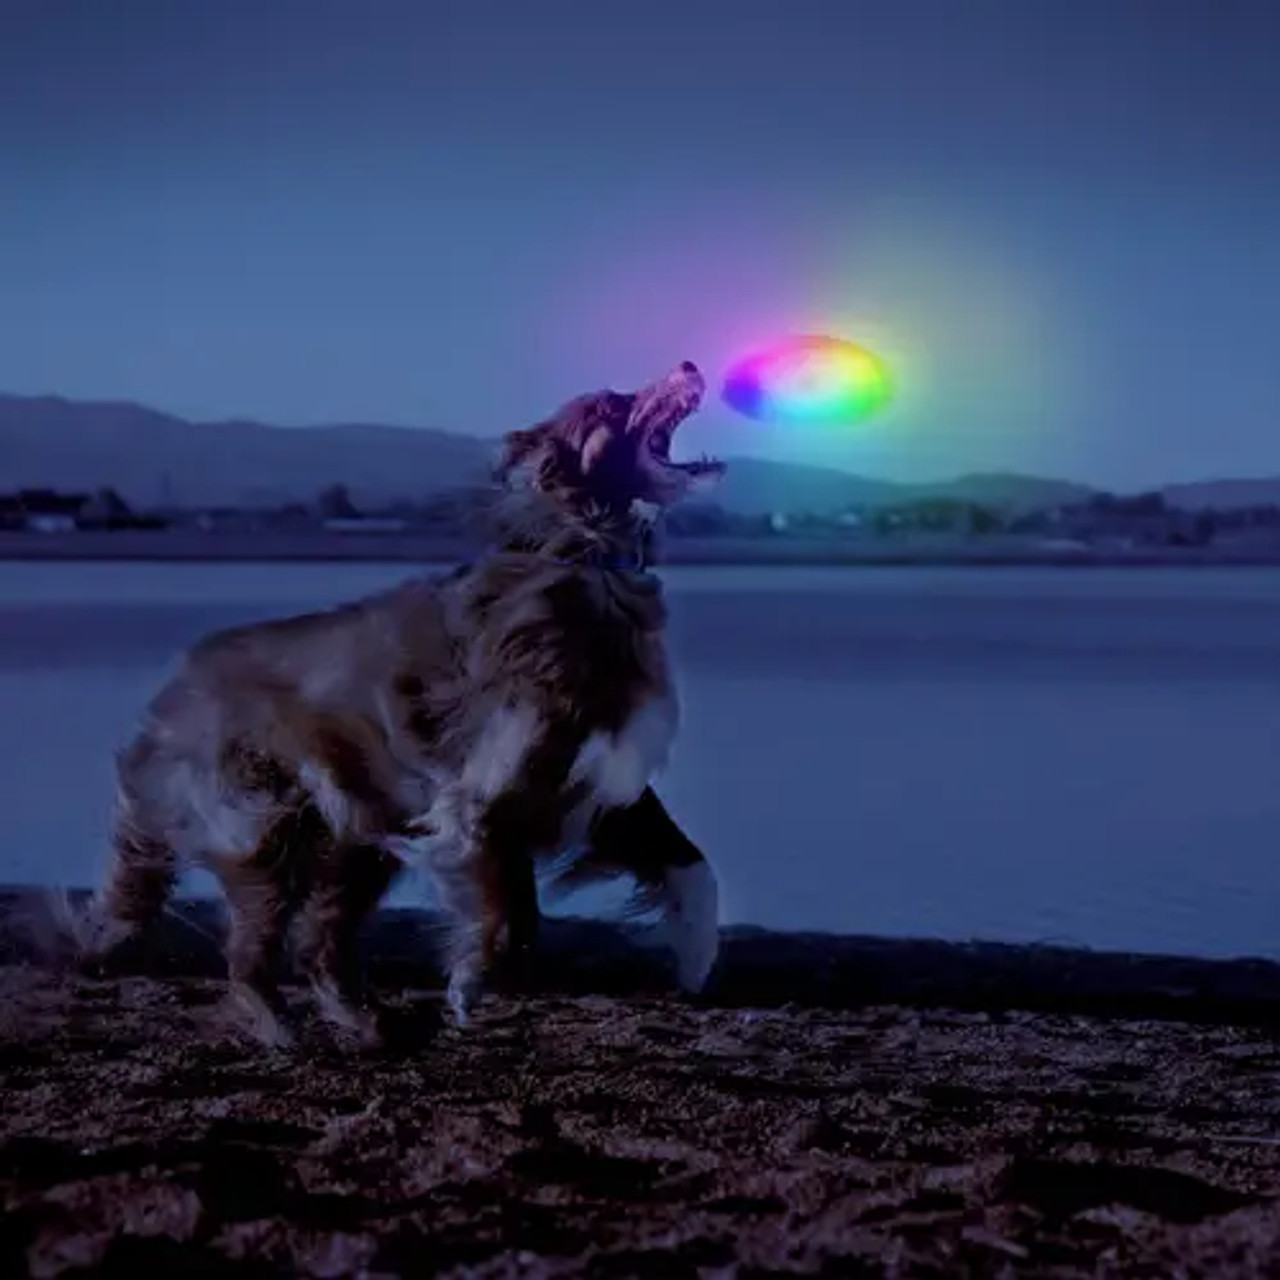 Nite Ize Flashflight Dog Discuit LED Flying Disc